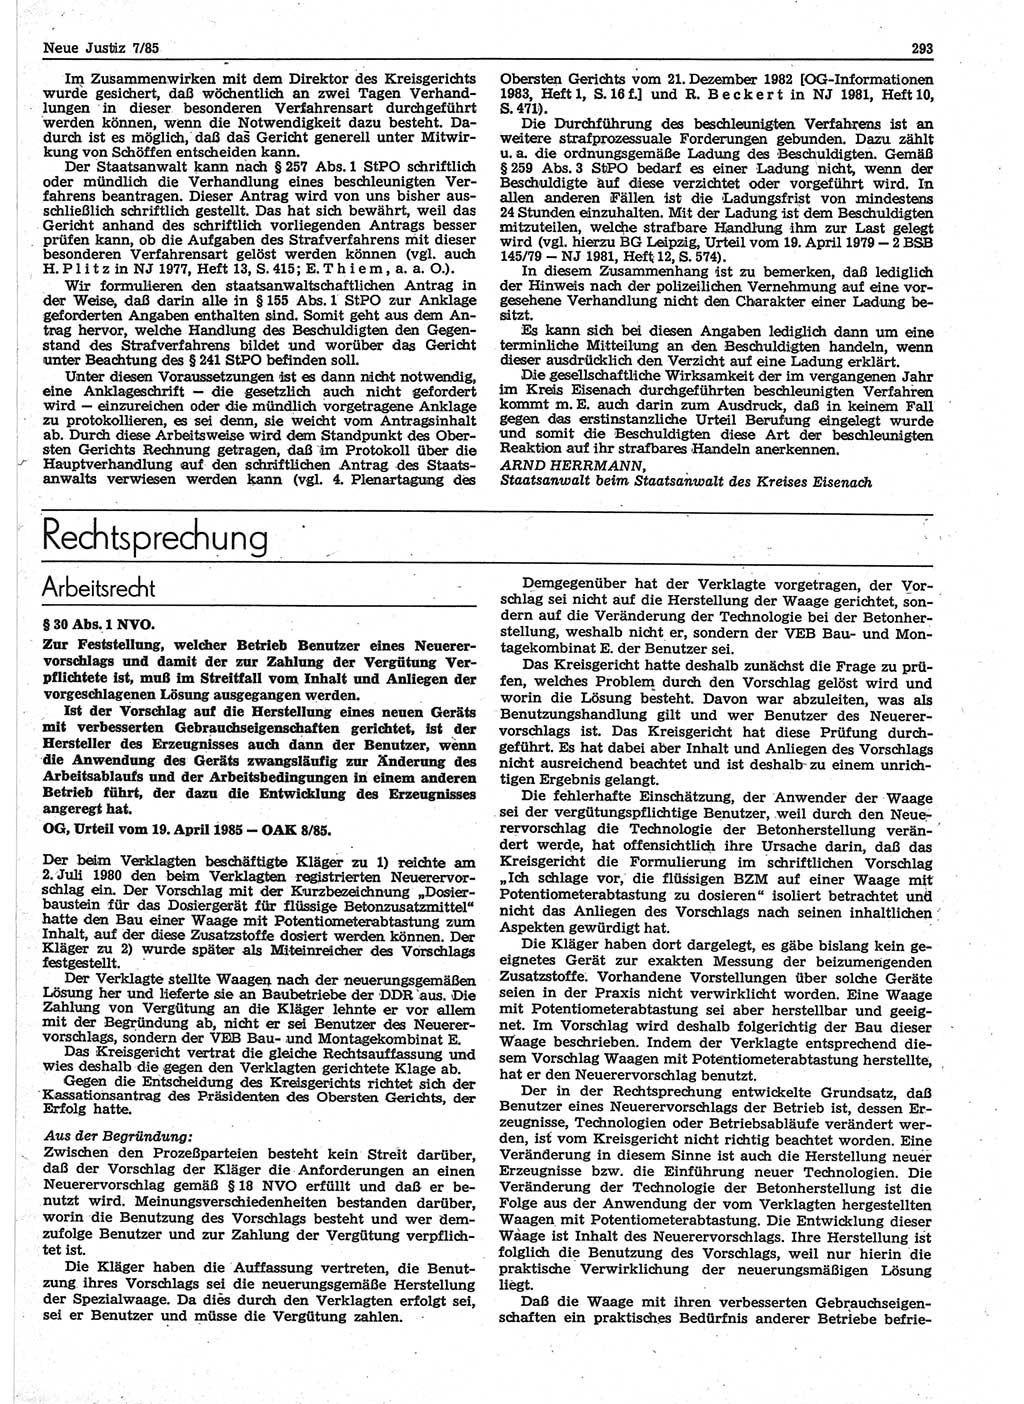 Neue Justiz (NJ), Zeitschrift für sozialistisches Recht und Gesetzlichkeit [Deutsche Demokratische Republik (DDR)], 39. Jahrgang 1985, Seite 293 (NJ DDR 1985, S. 293)